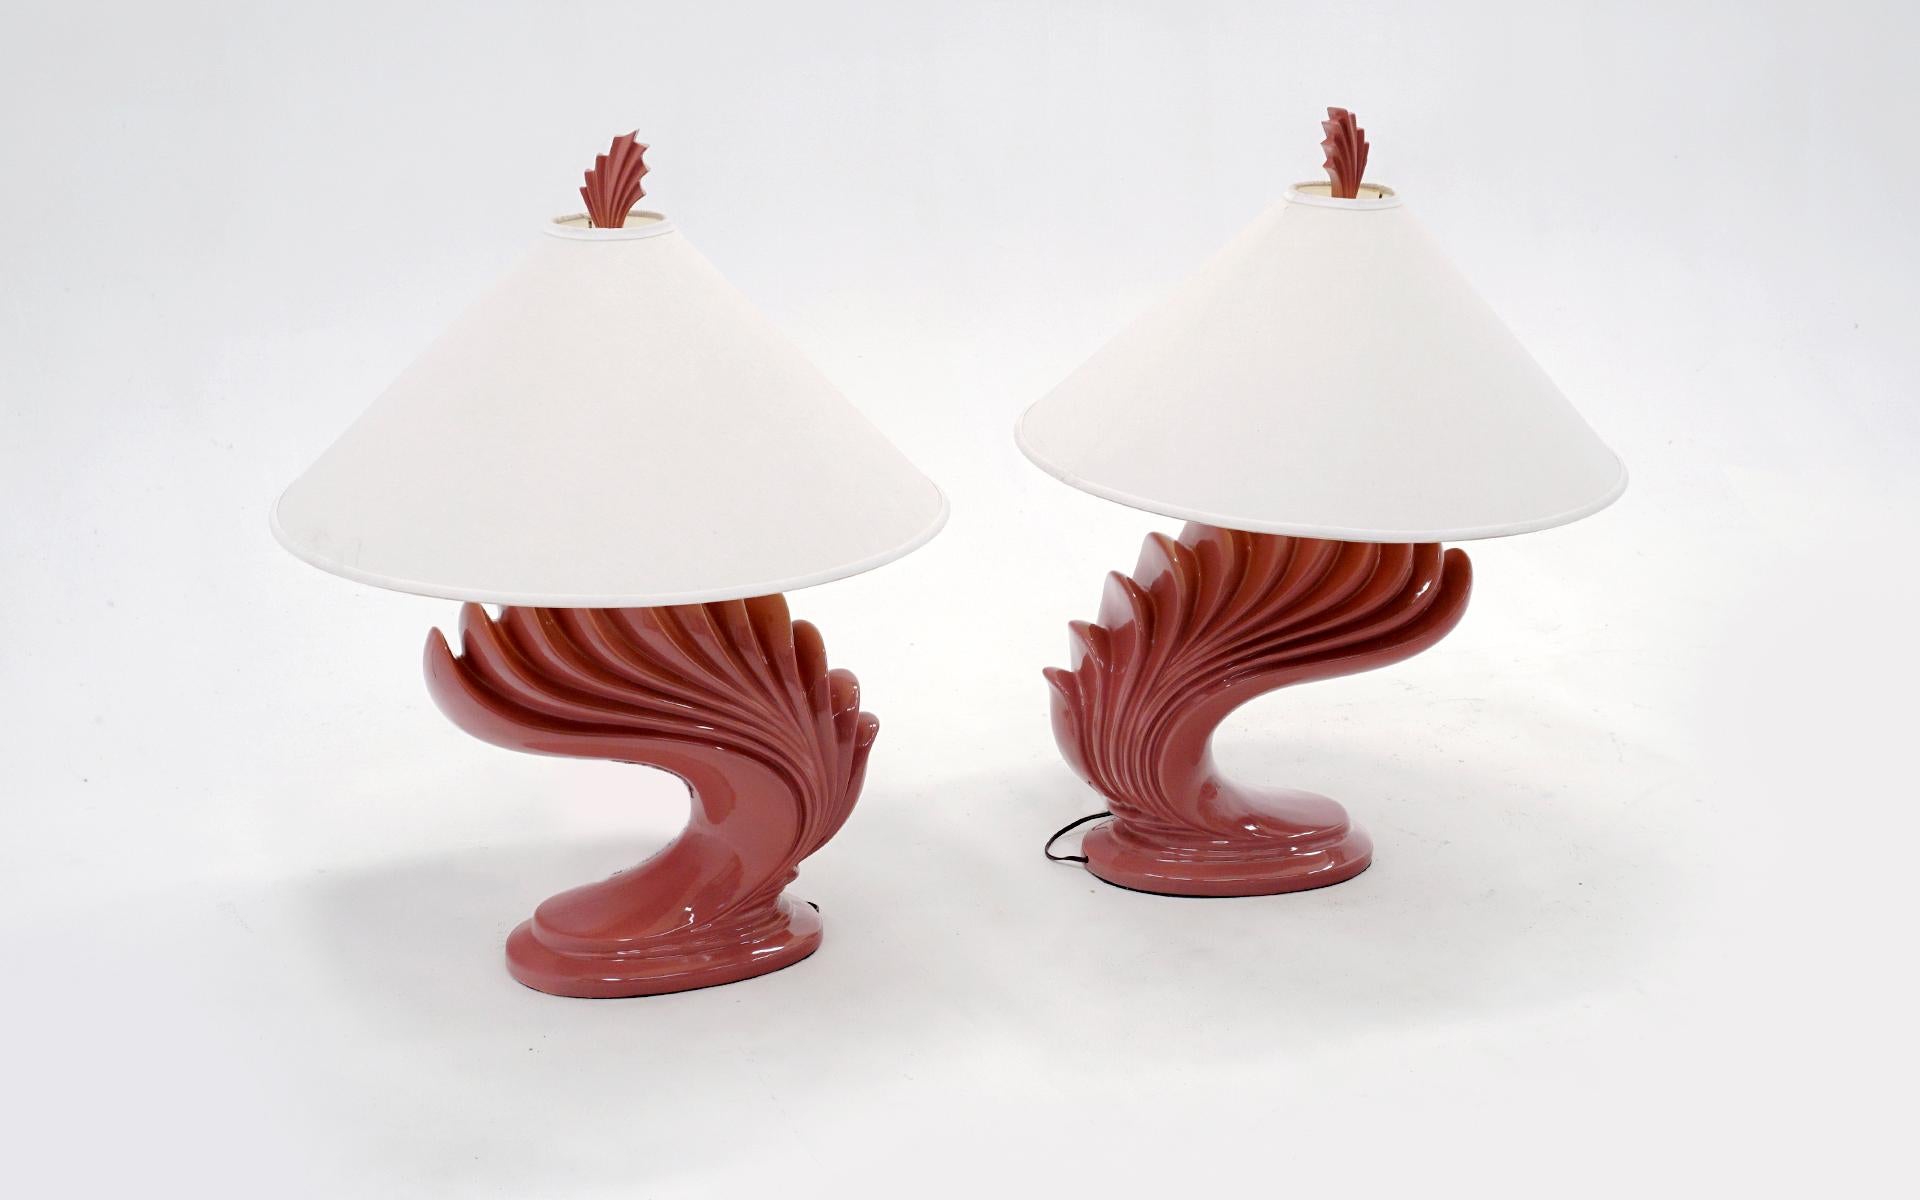 Großes, auffallendes Paar Keramik-Tischlampen mit den originalen passenden Endstücken und originalen Lampenschirmen. Koralle / lachsfarben / dunkelrosa in der Farbe. Beide sind für amerikanische Steckdosen verdrahtet und in gutem Zustand. Sehr